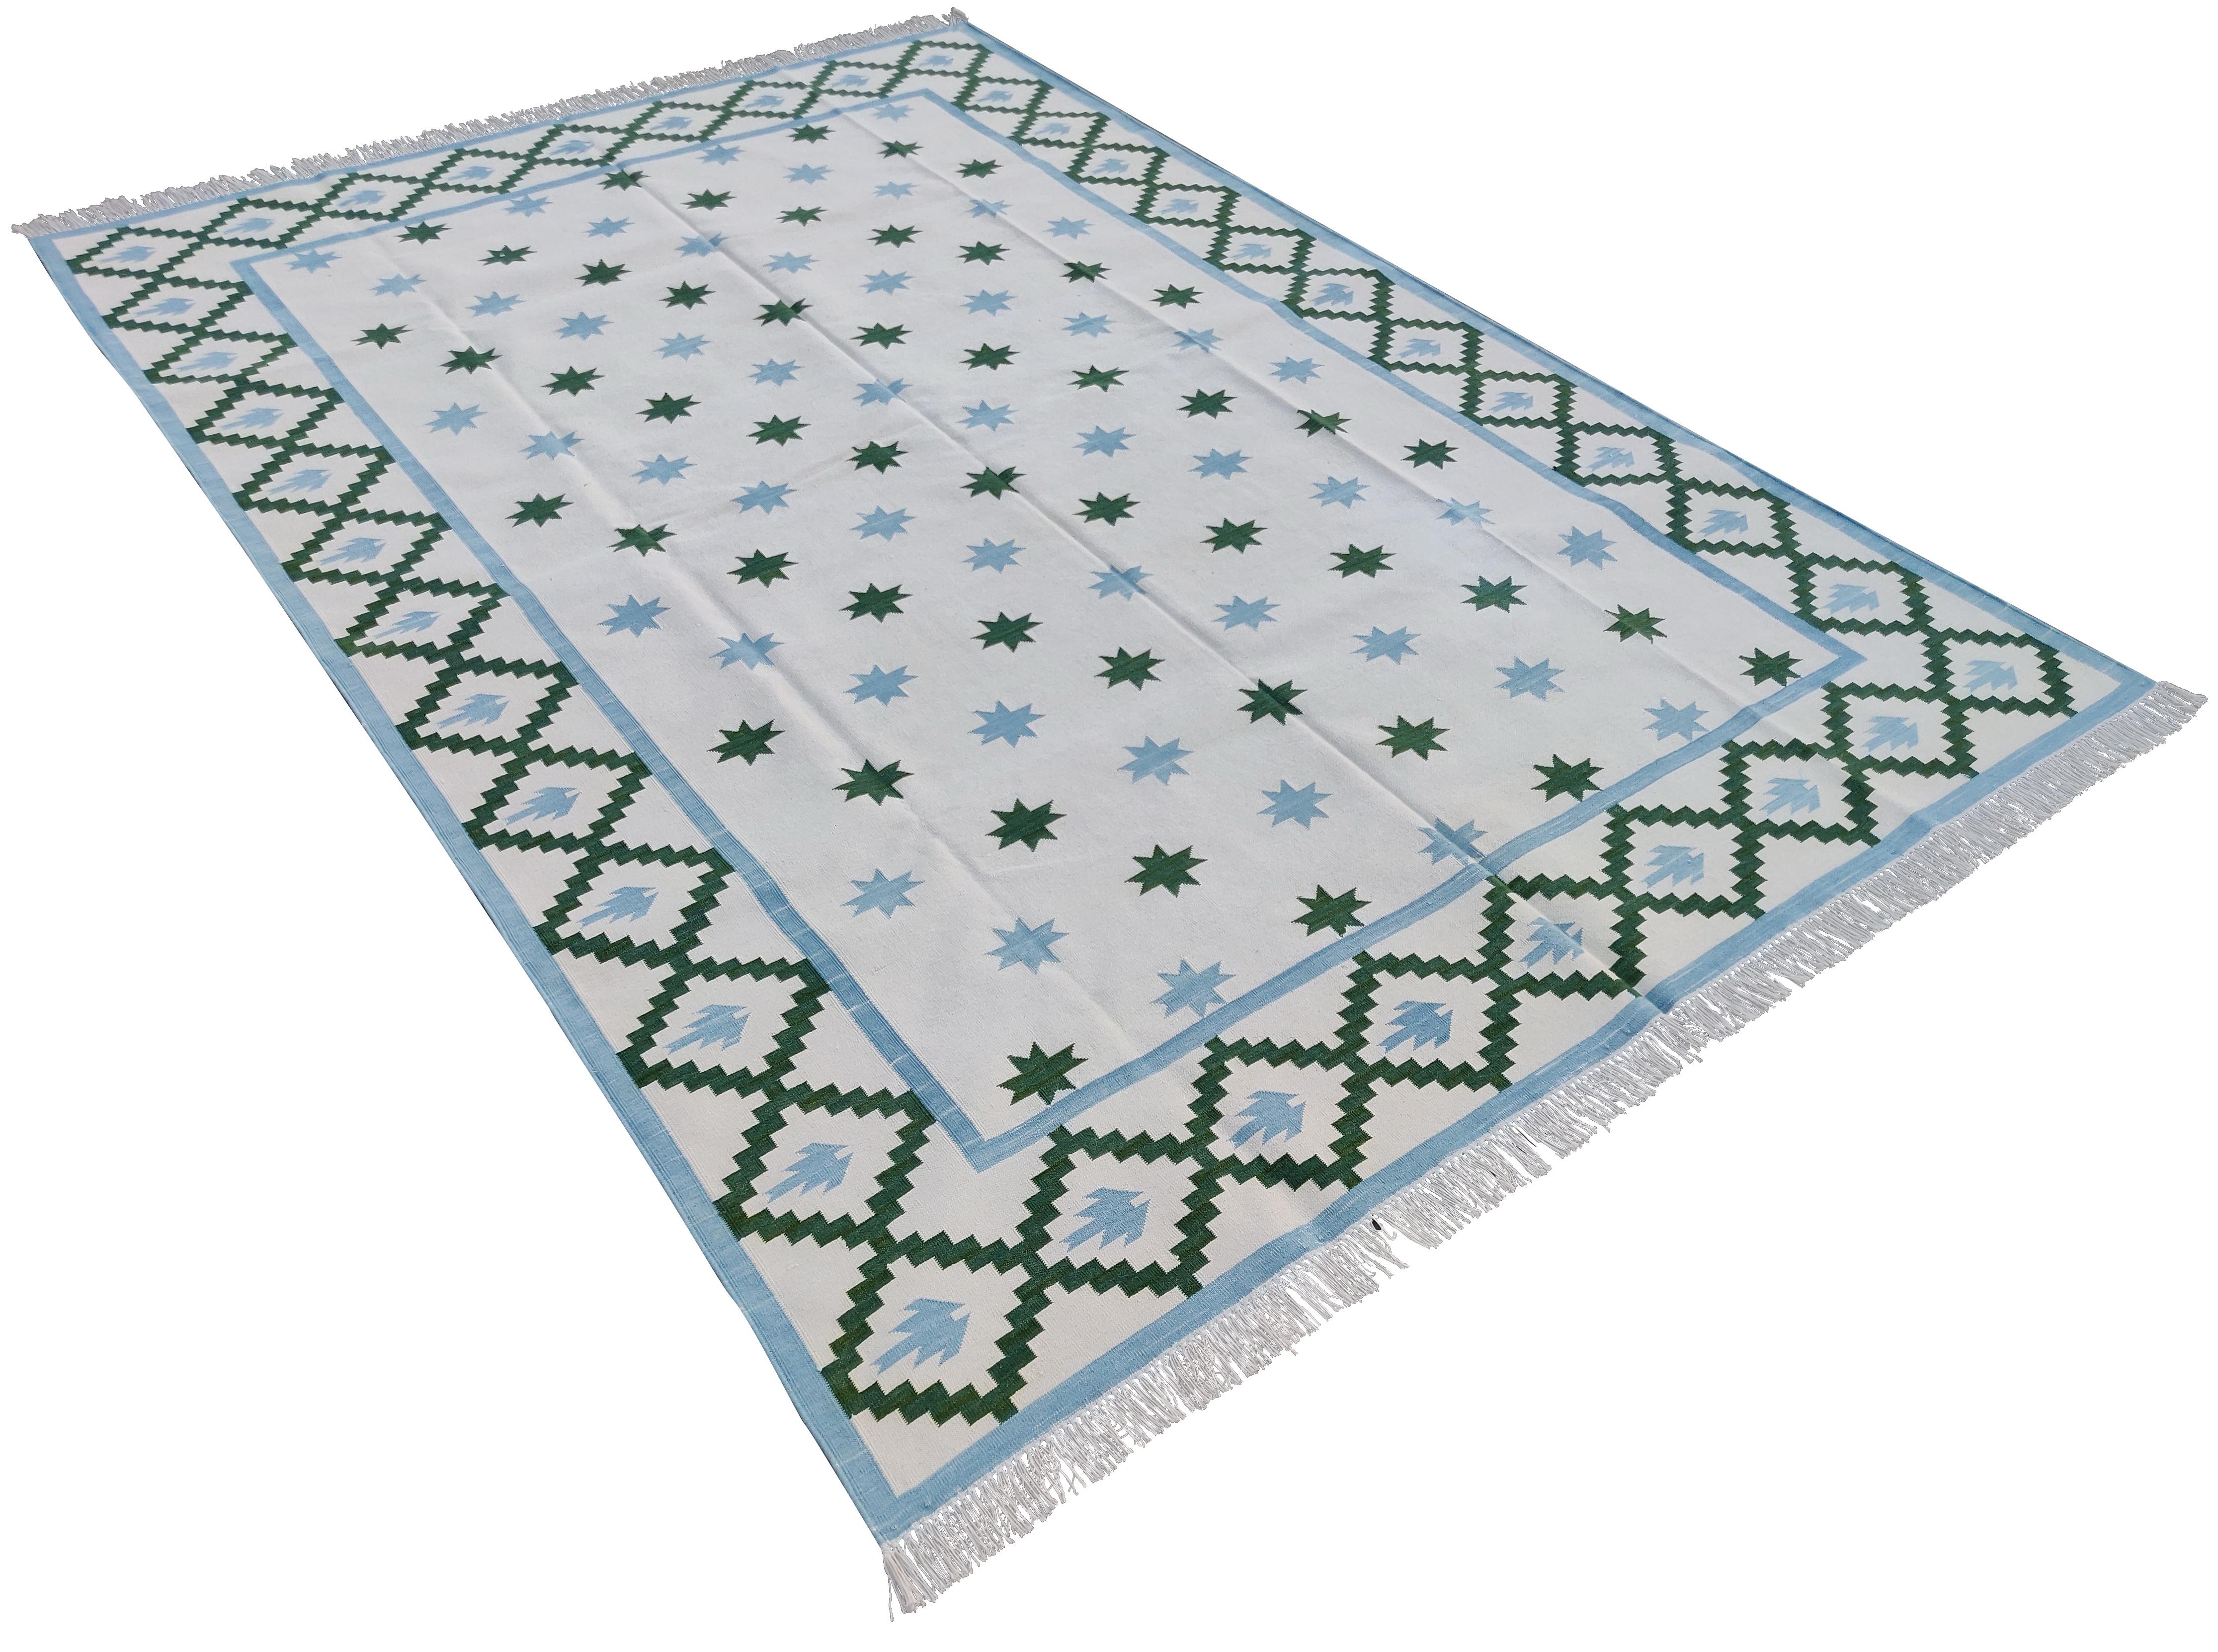 Tapis indien en coton teint dans la masse crème, bleu ciel et vert avec étoiles géométriques-6'x9'.
Ces dhurries spéciales à tissage plat sont tissées à la main avec du fil 100 % coton 15 plis. En raison des techniques de fabrication spéciales